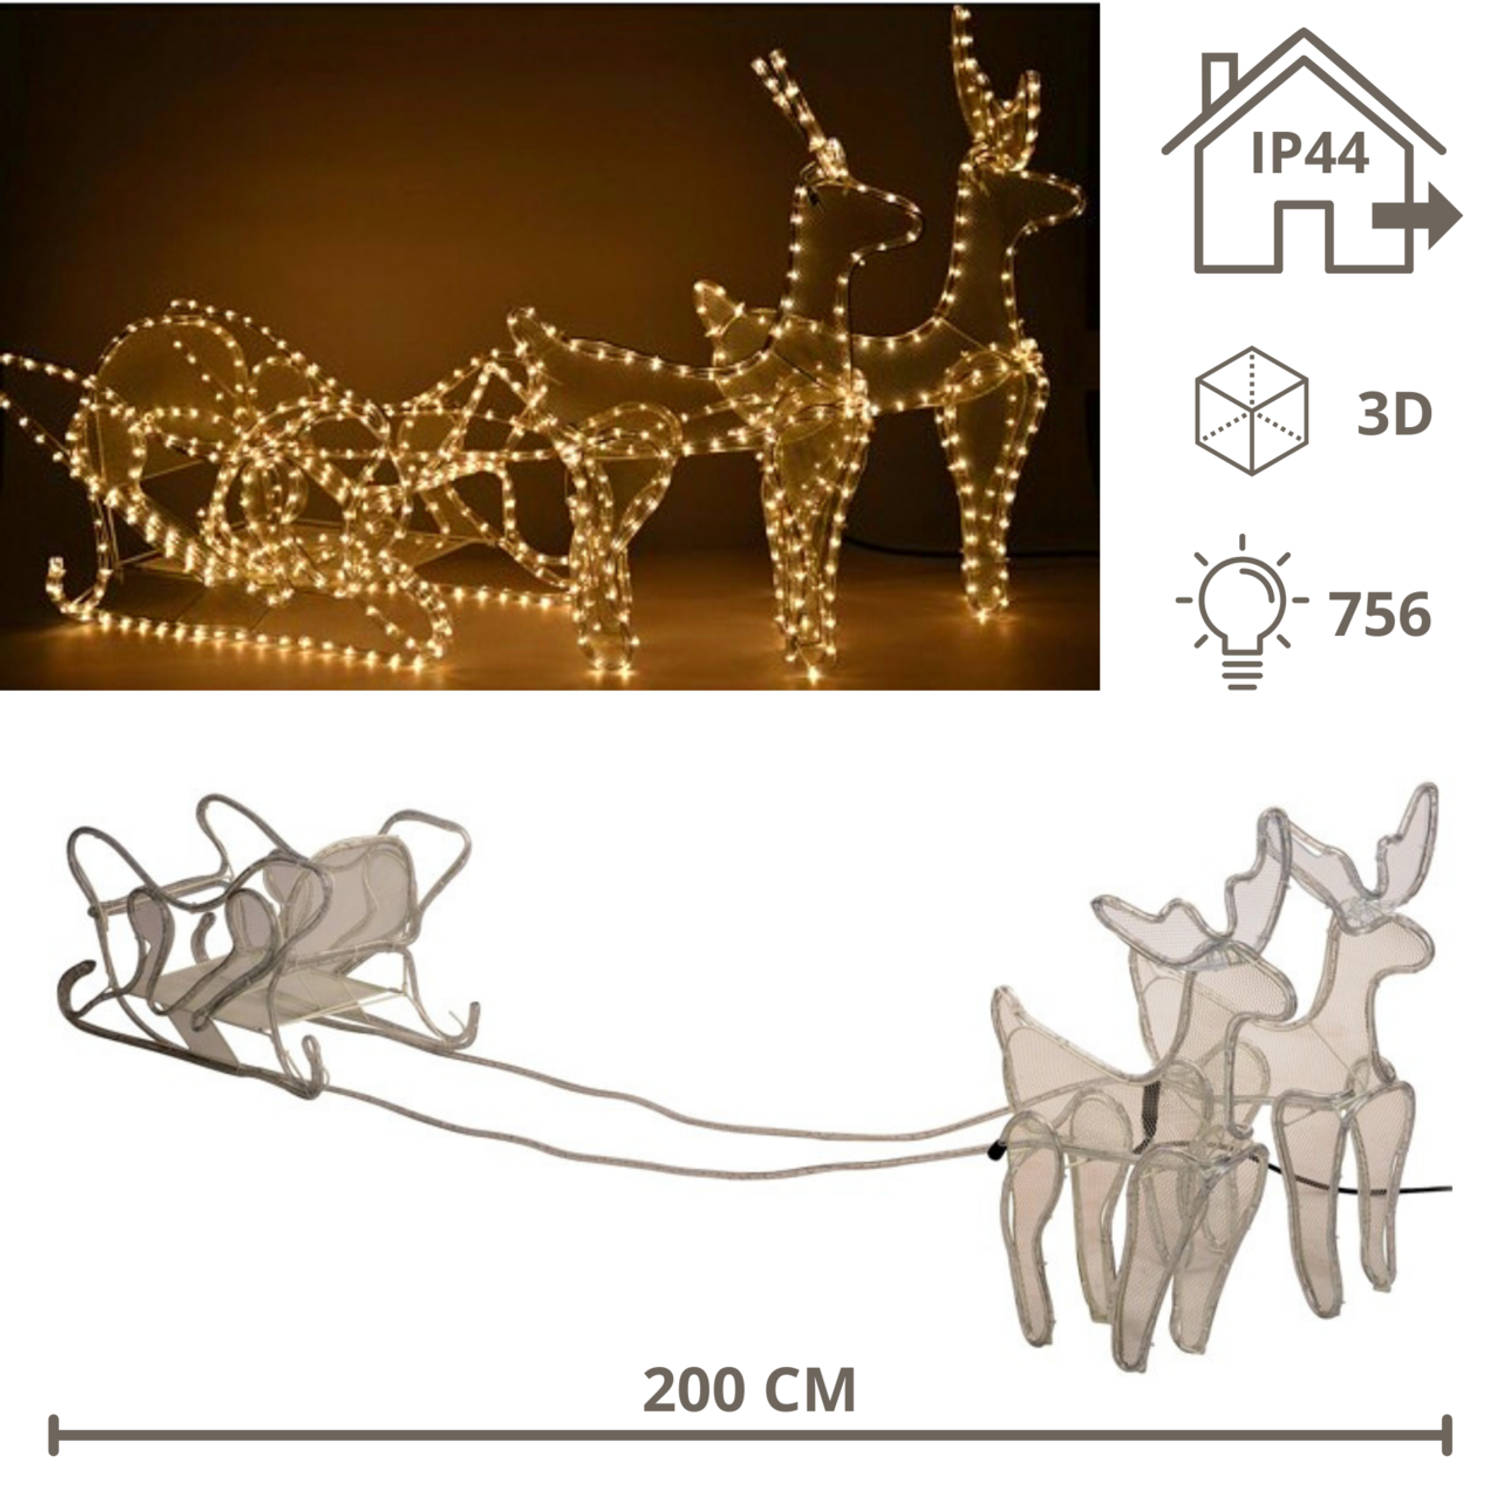 Rendieren met Slee - Rendier met Slee - Kerstversiering - Kerst - Kerstverlichting buiten - 756 lampjes